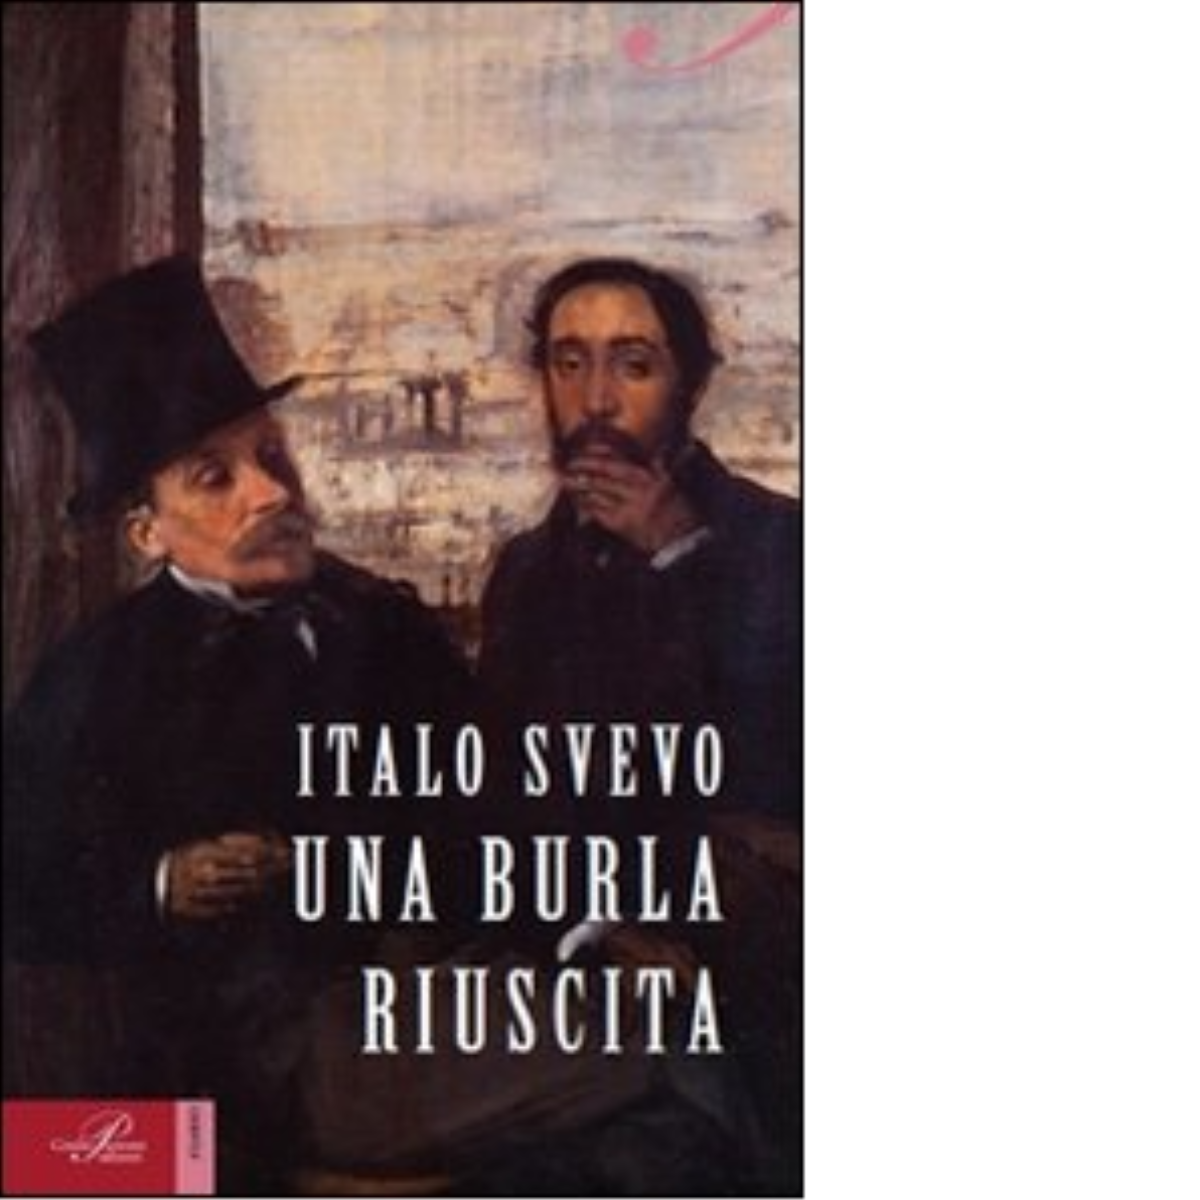 Una burla riuscita - Italo Svevo - Perrone editore, 2014 libro usato